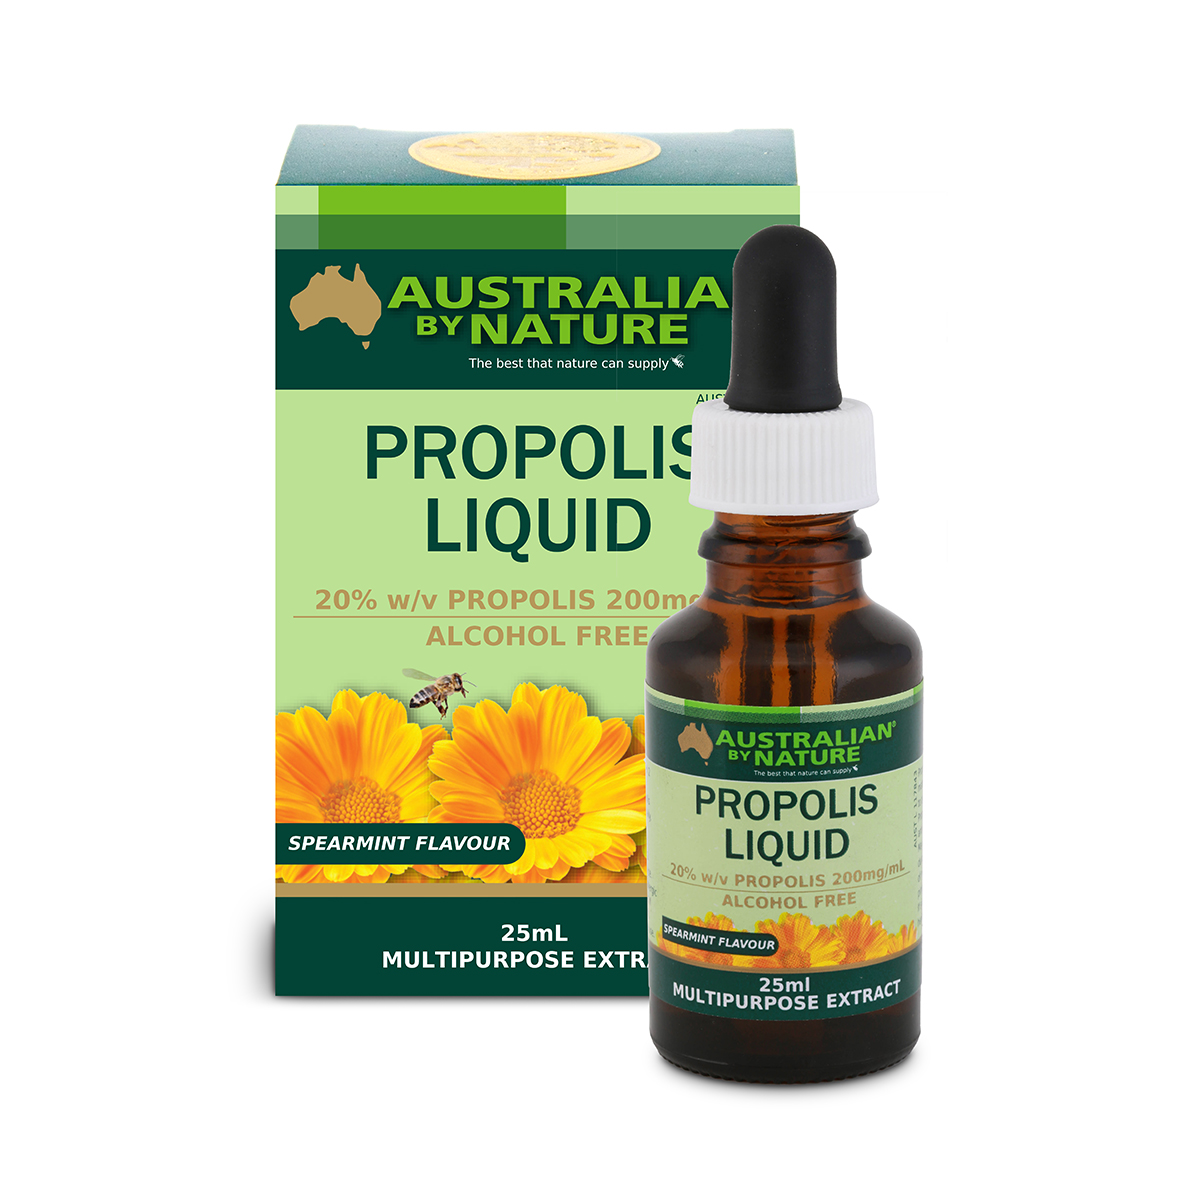 Propolis liquid